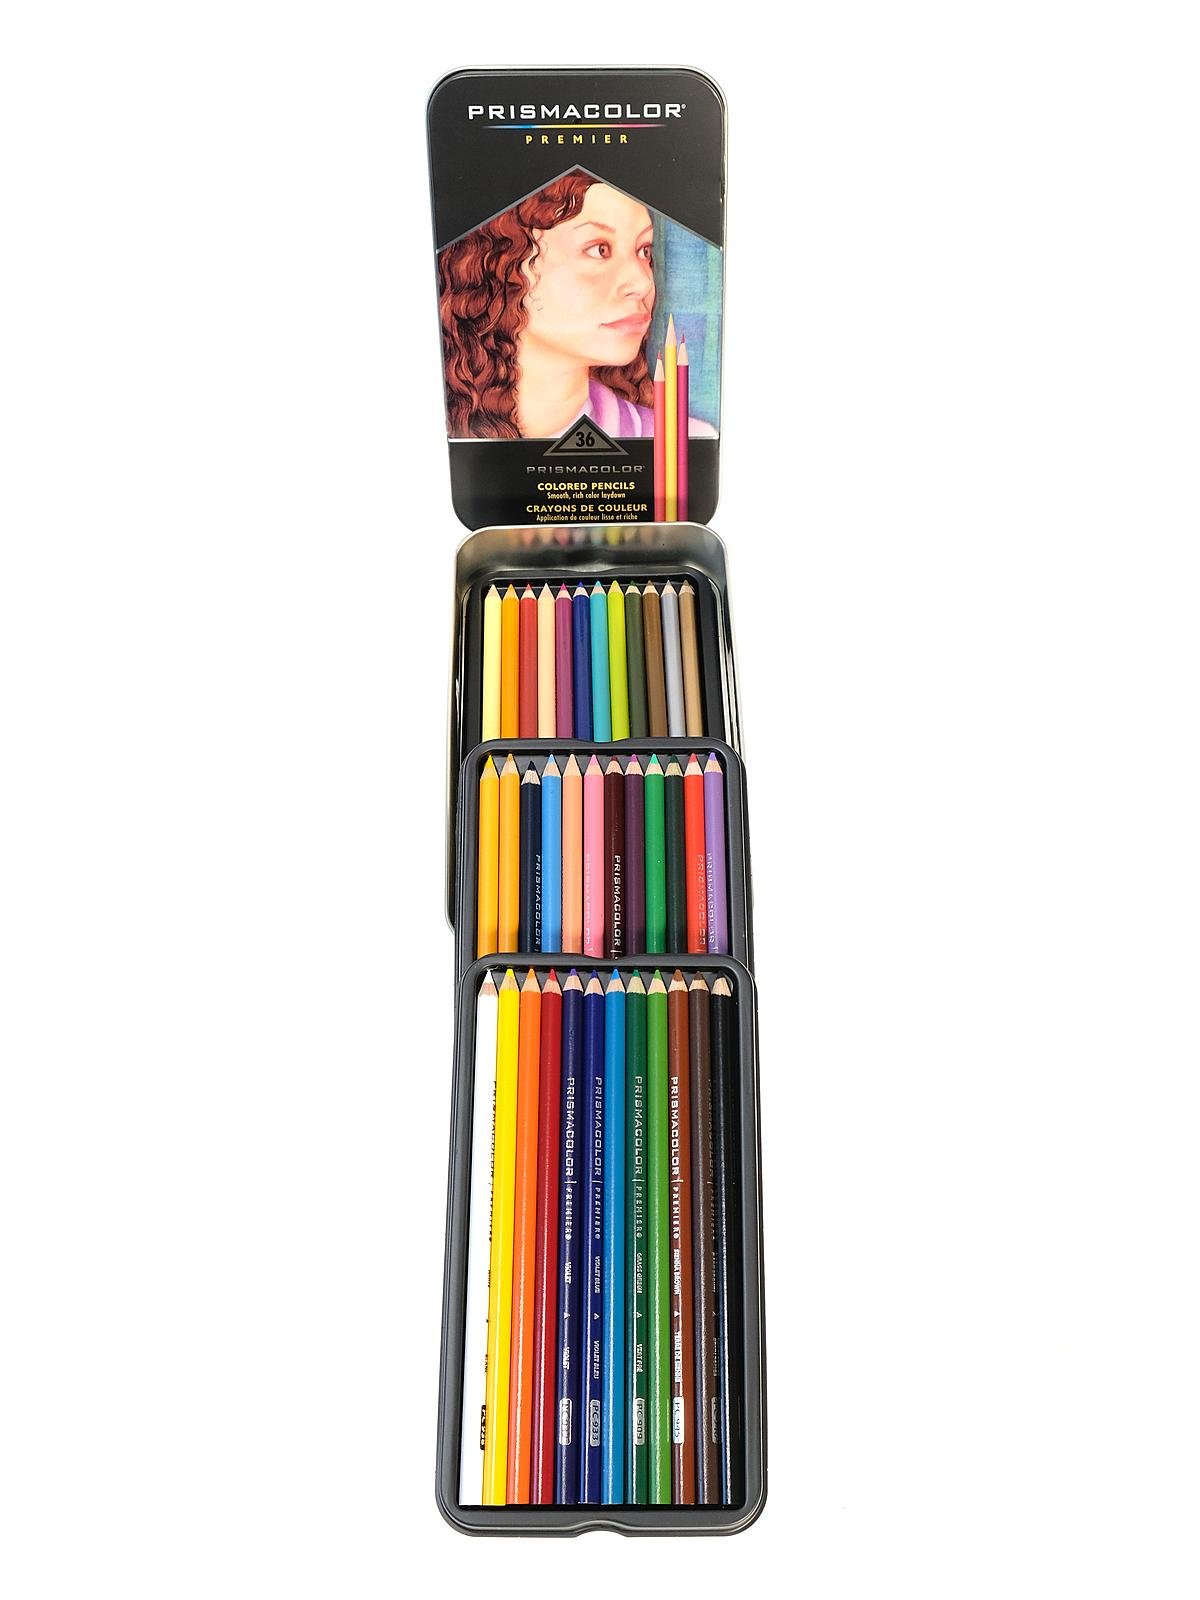 Prismacolor Premier Art Kit, Colored Pencils, Watercolor Pencils